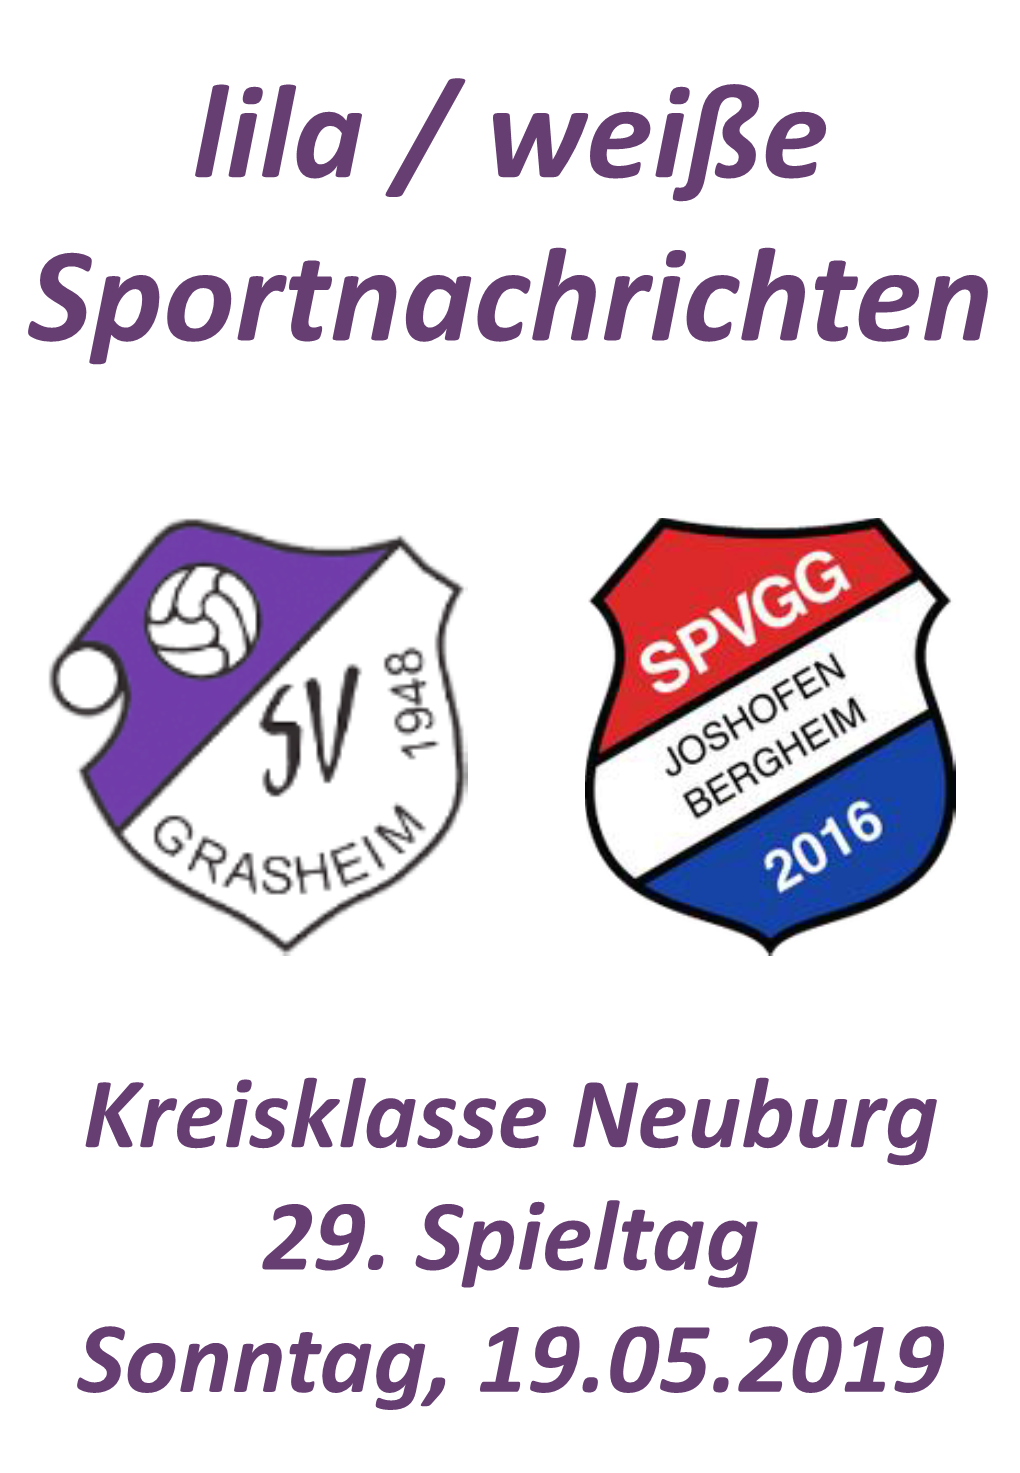 Kreisklasse Neuburg 29. Spieltag Sonntag, 19.05.2019